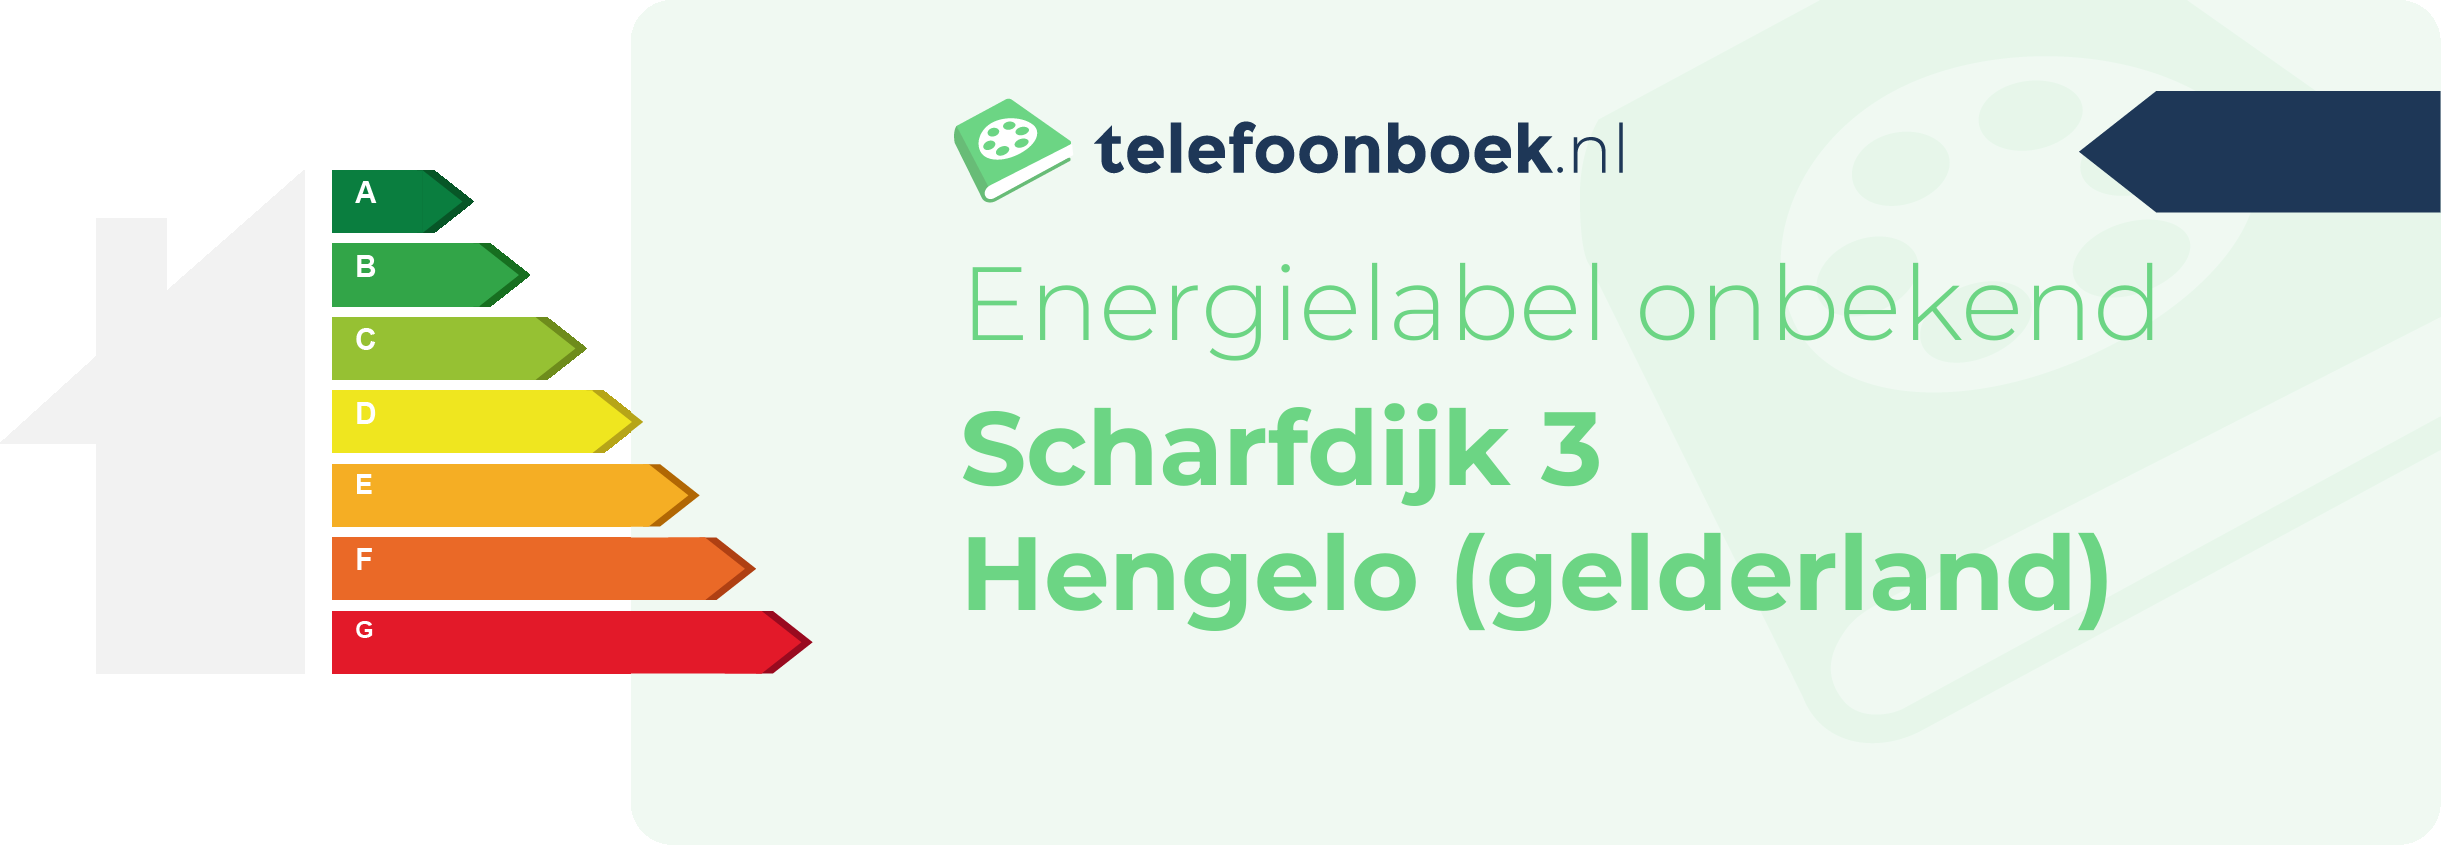 Energielabel Scharfdijk 3 Hengelo (Gelderland)